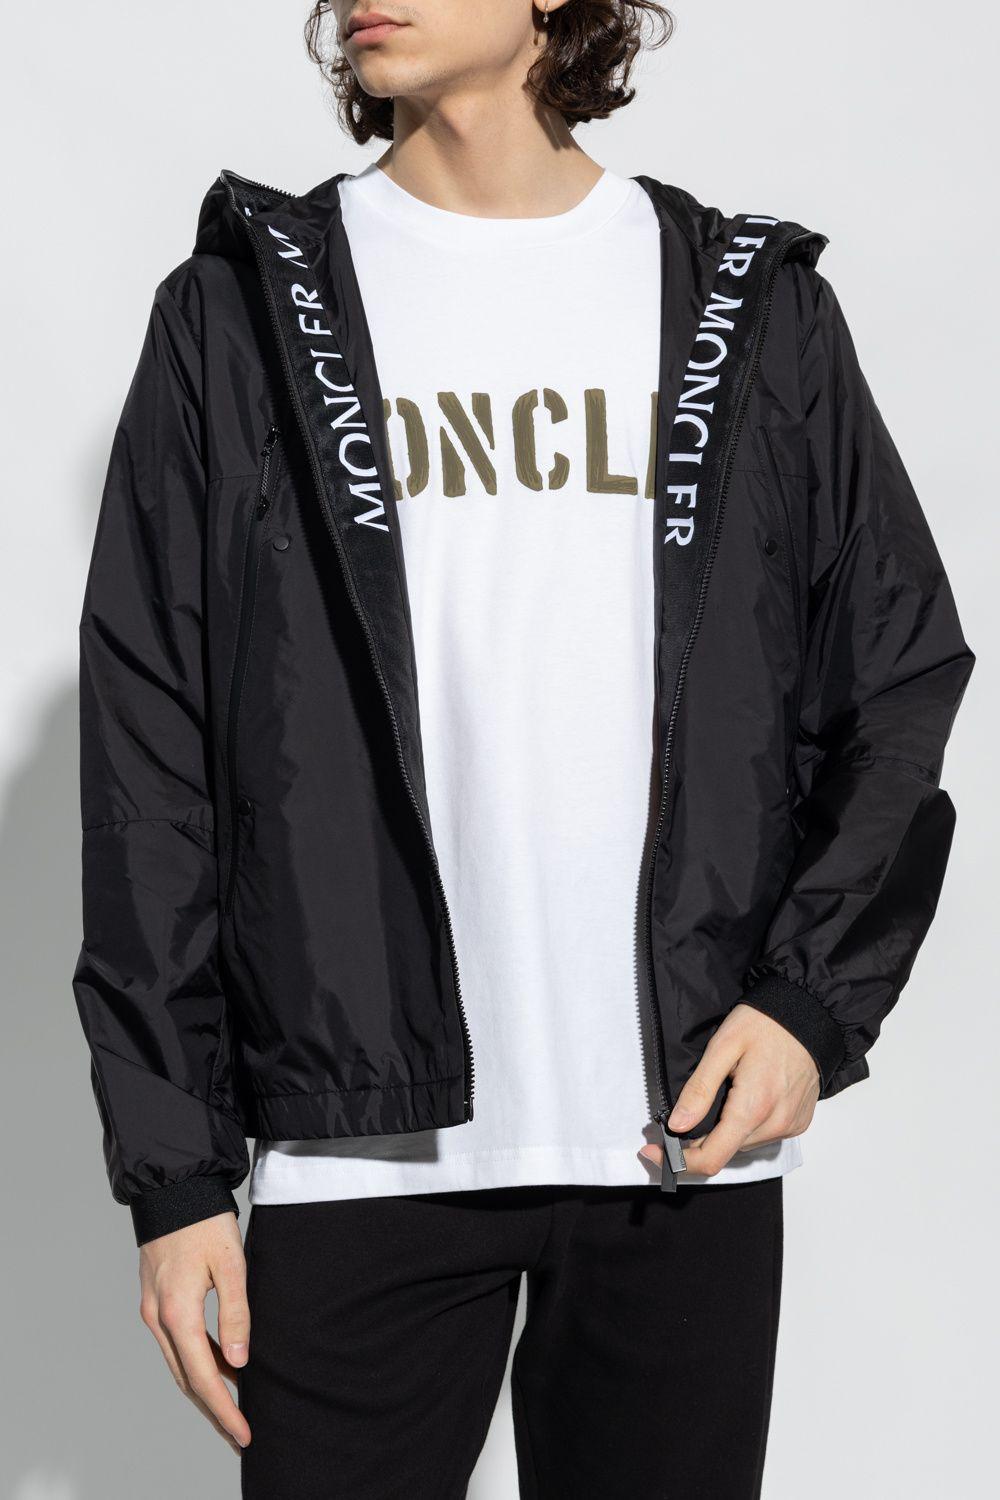 Moncler 'junichi' Jacket in Black for Men | Lyst